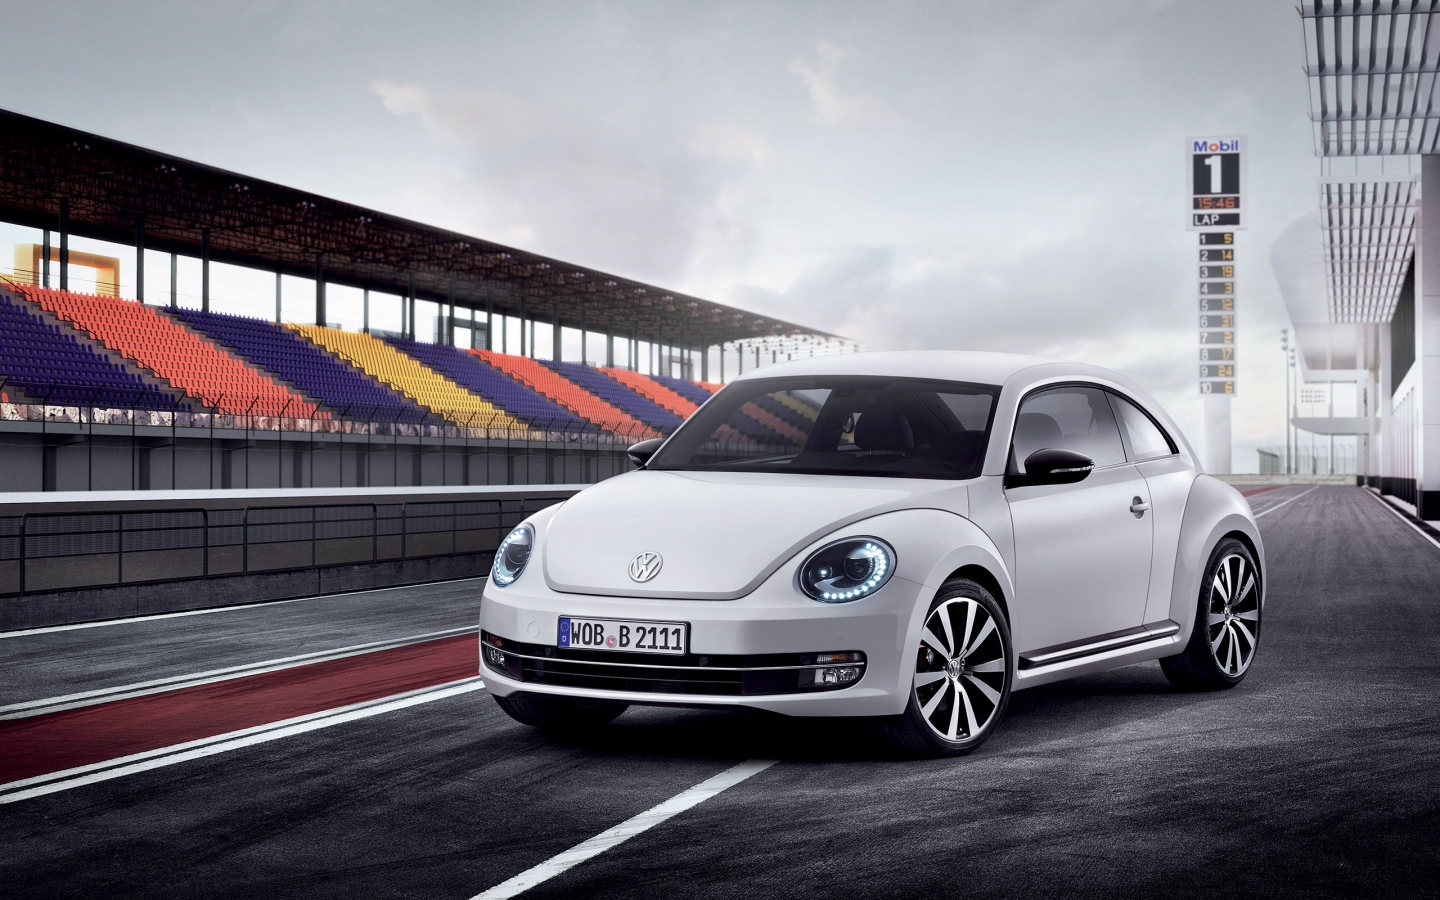 Volkswagen Beetle 2012 for 1440 x 900 widescreen resolution